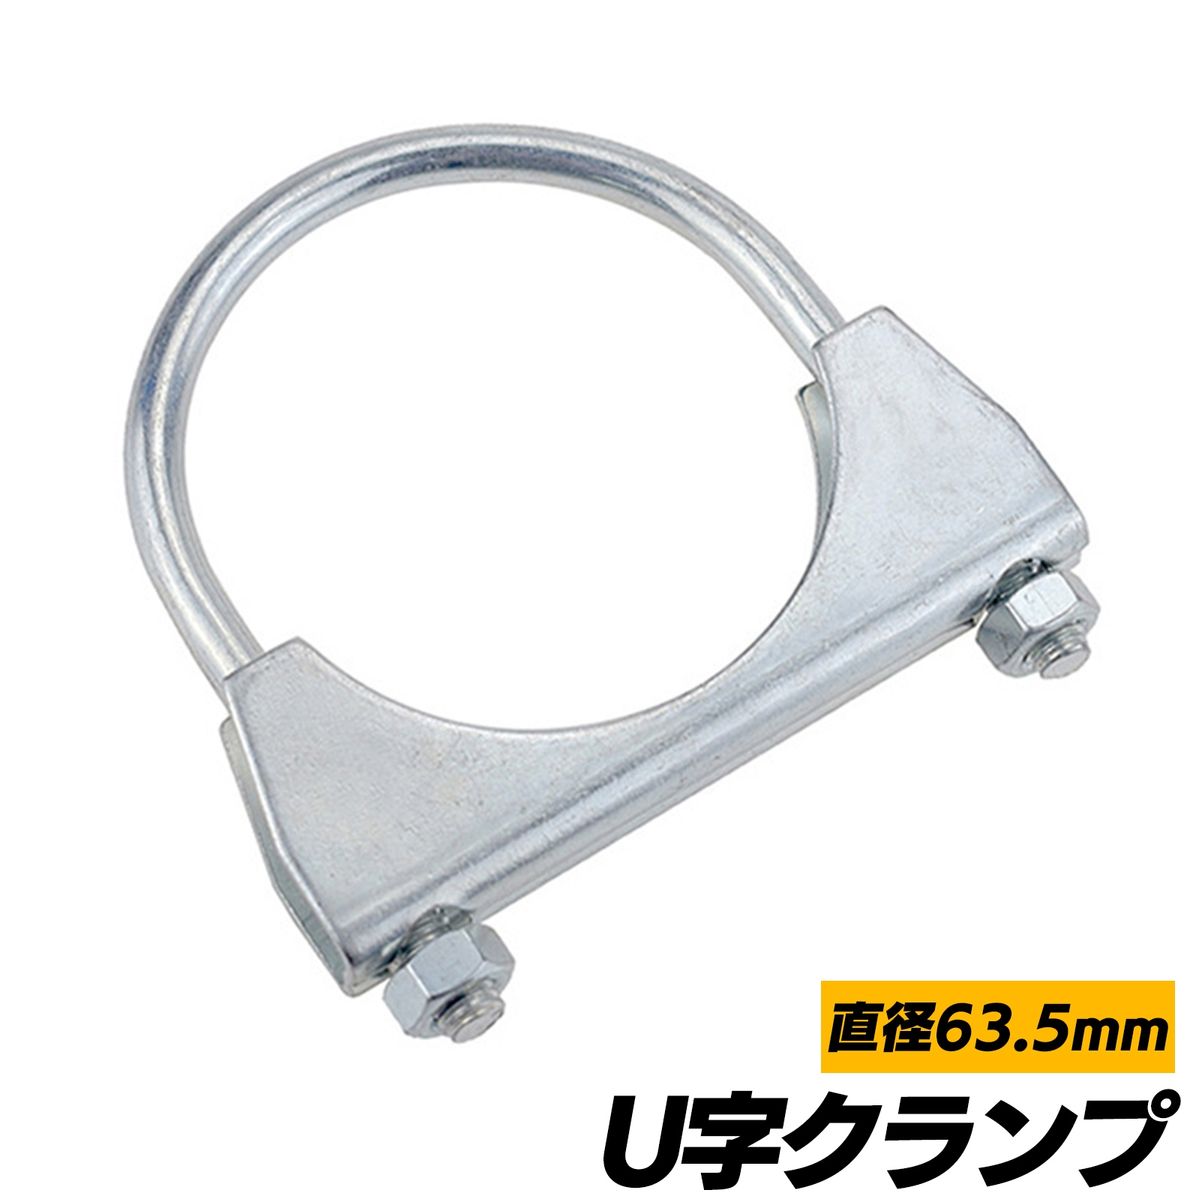 【送料無料】マフラー U字クランプ 63.5mm SN-265-MU